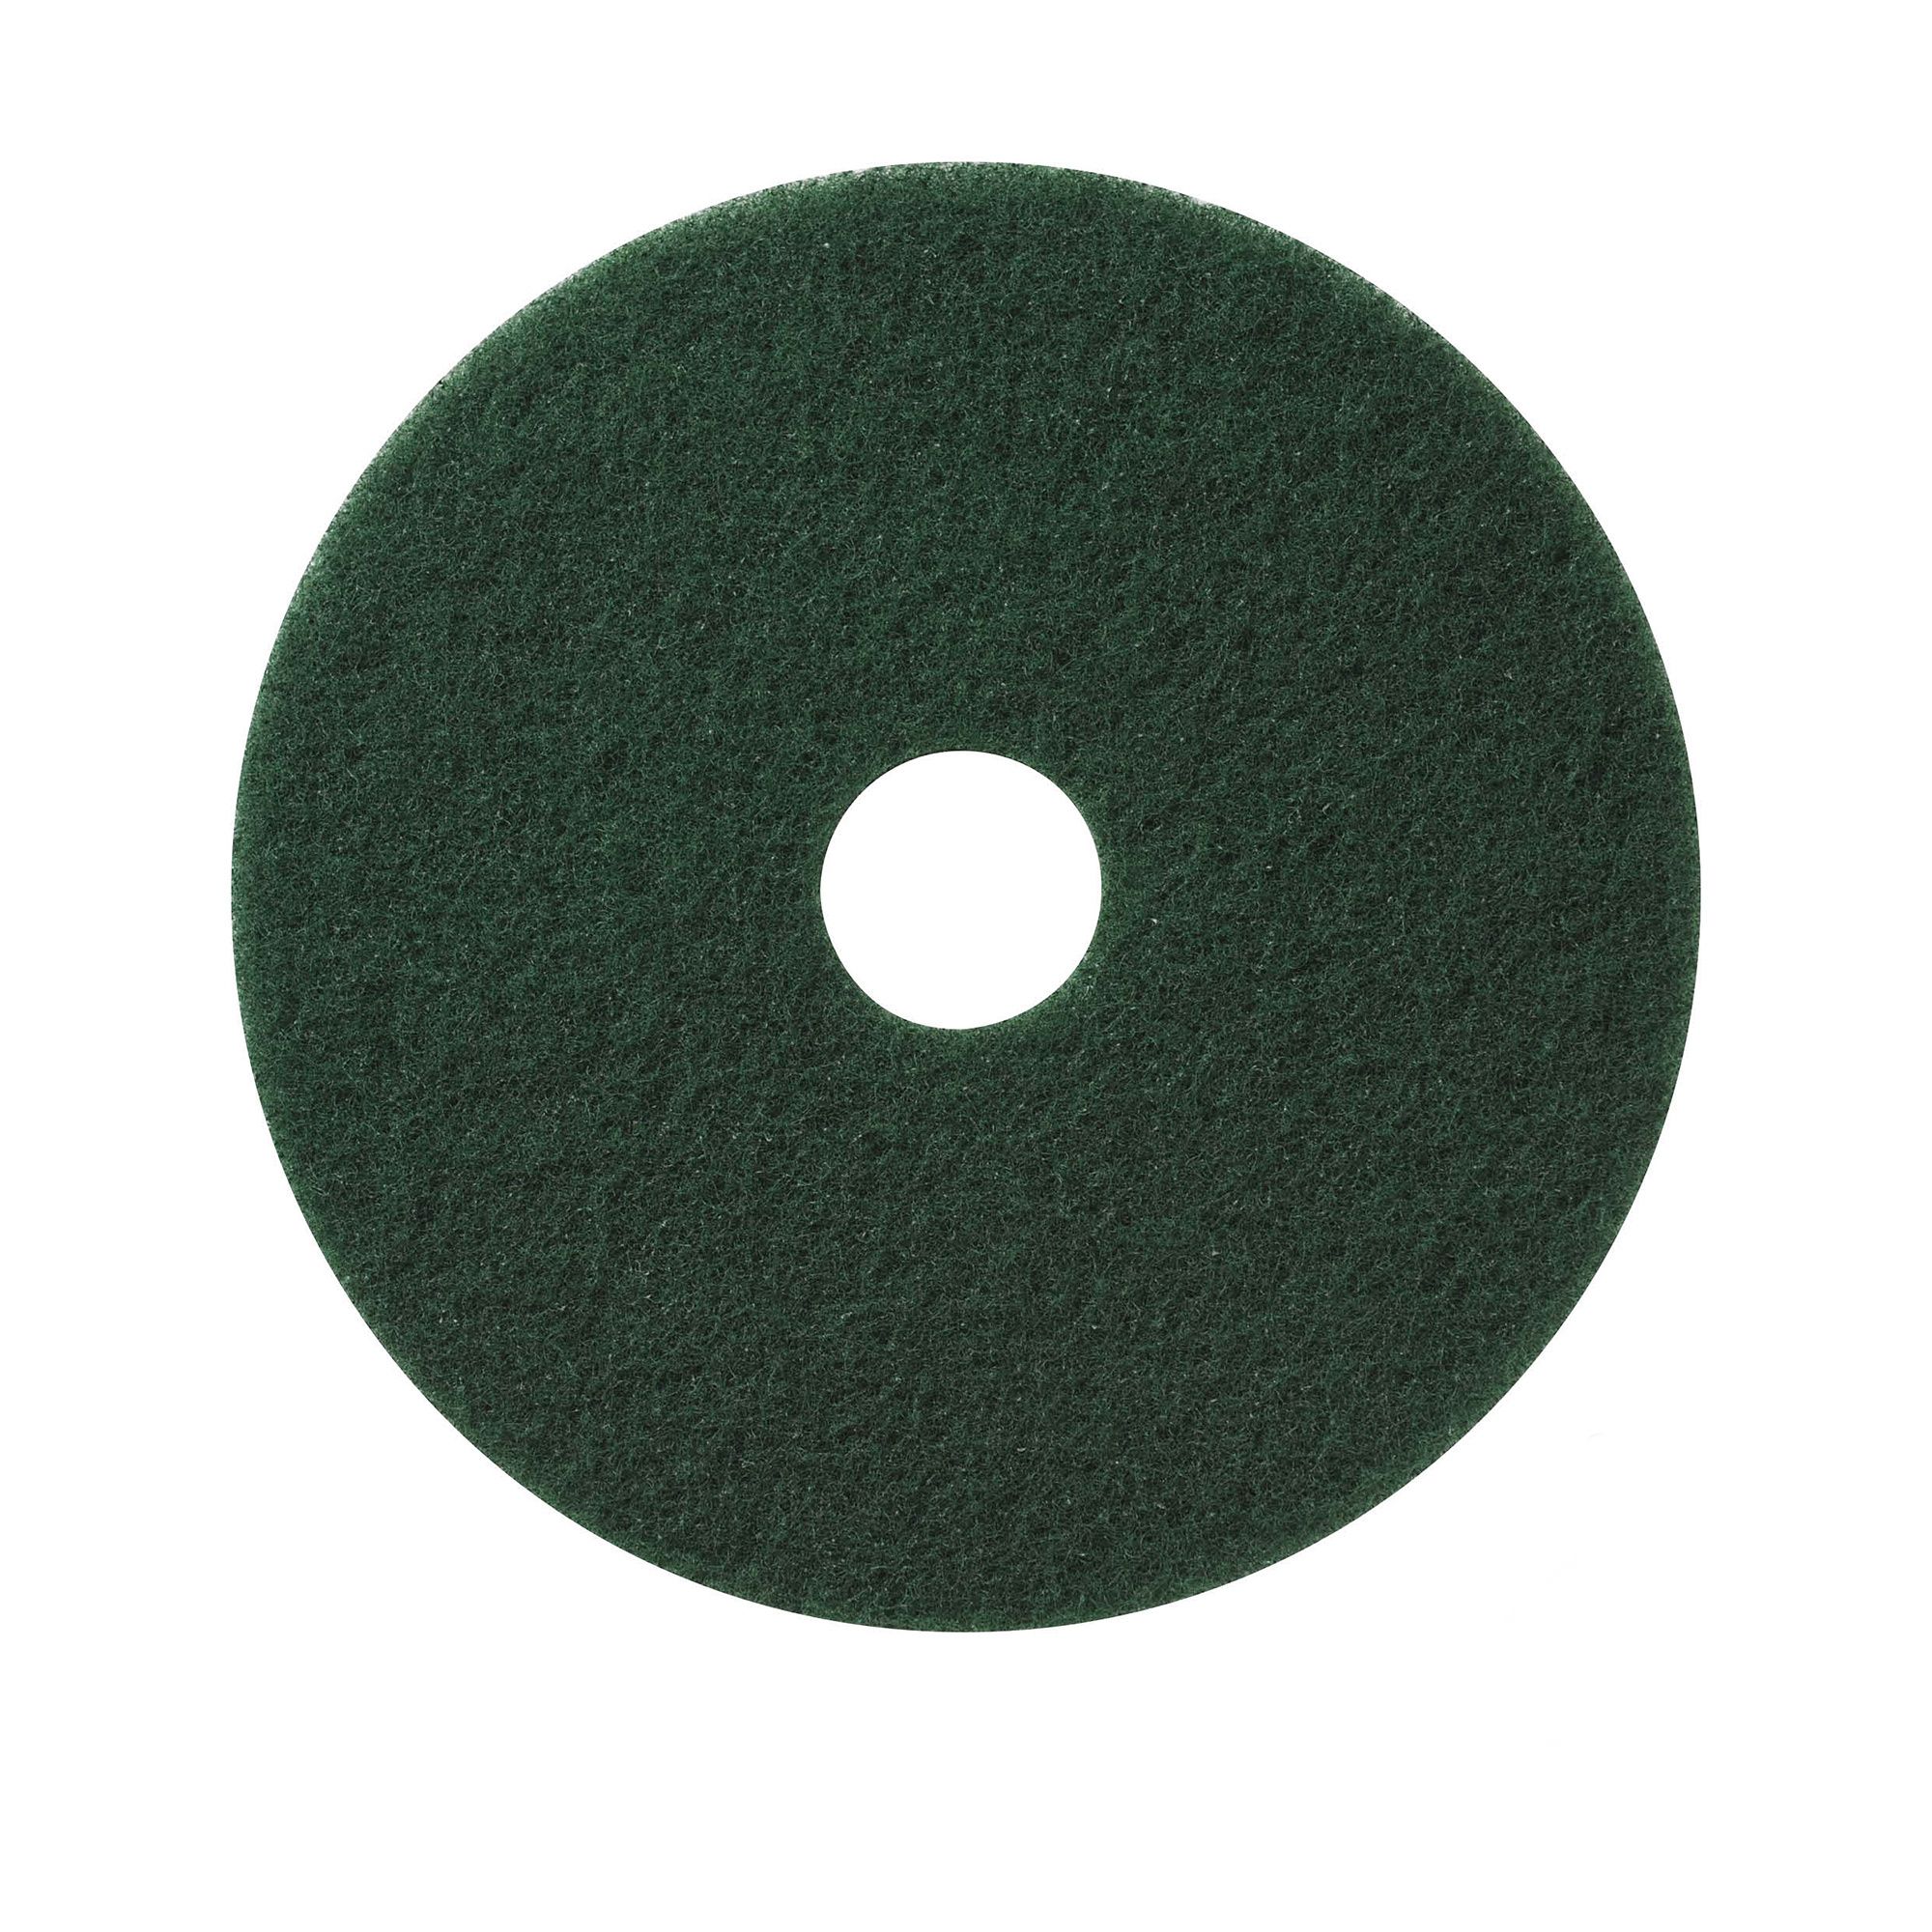 NuPad groen (zwaar schrobben), per 5 stuks, 20 inch / 508 mm